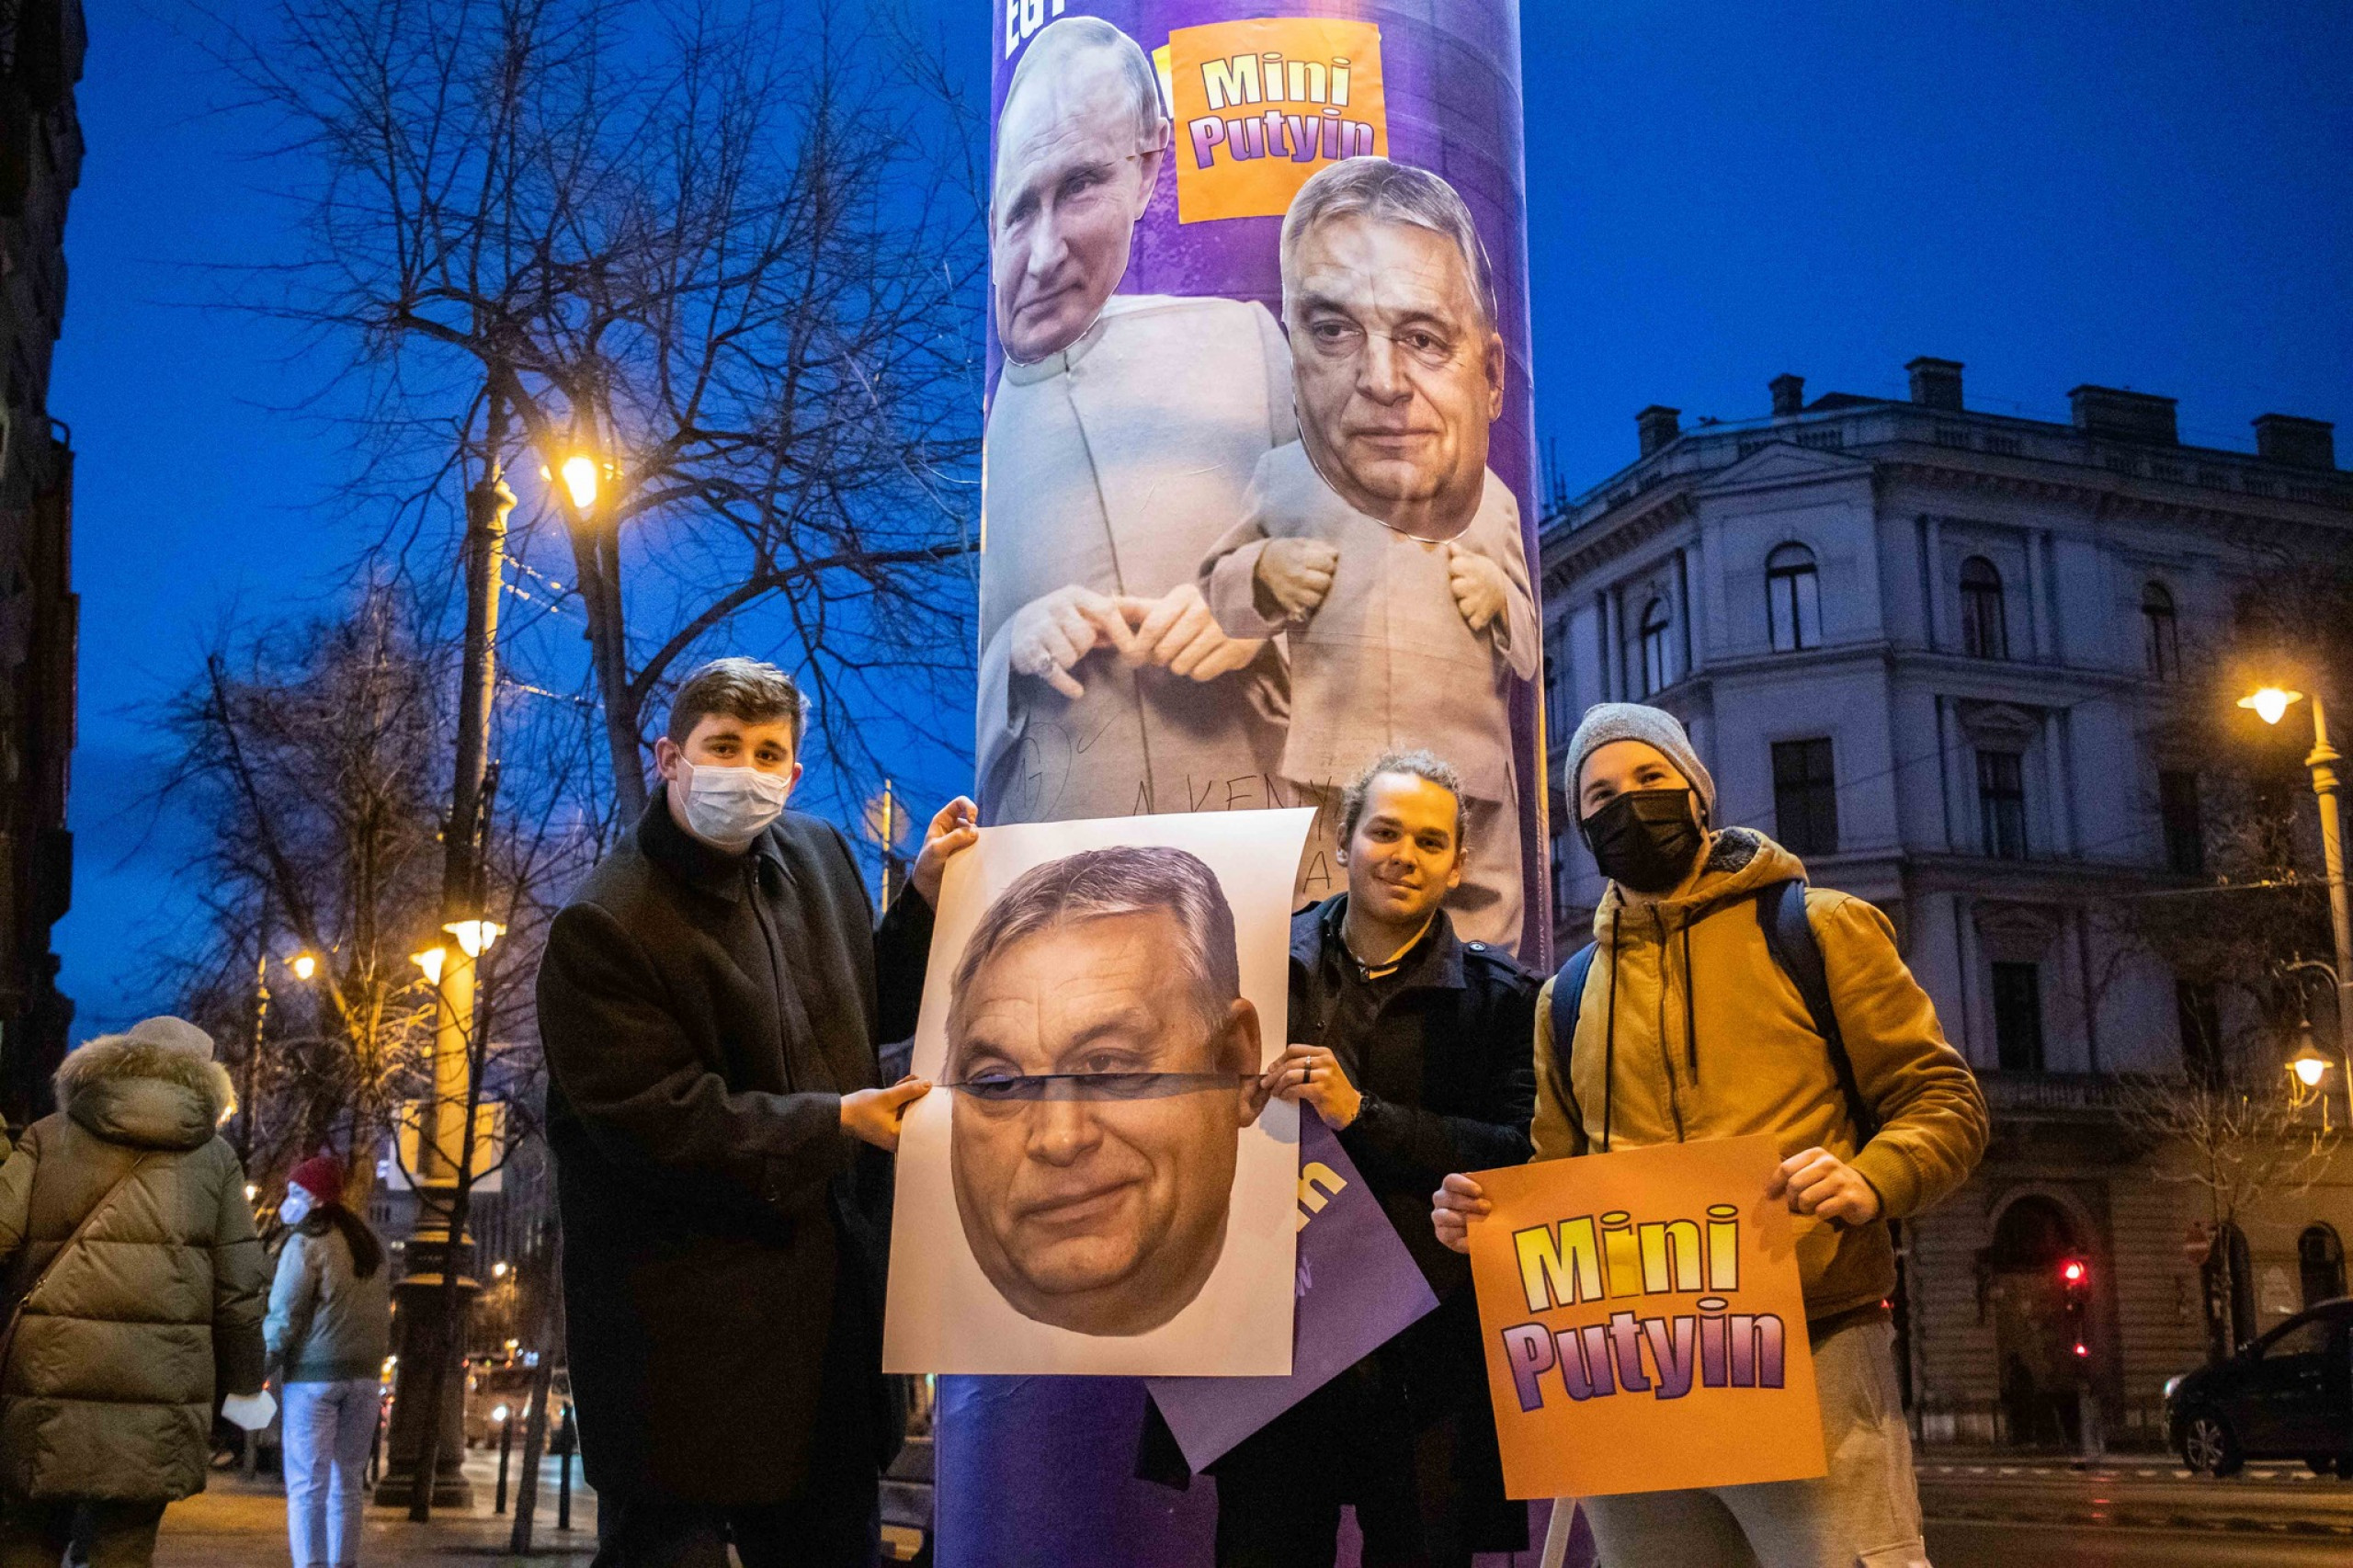 Что вызвало недовольство людей властью. Великая Венгрия Орбан. Протестах баннер с Путиным Орбаном Эрдоганом. Великая Венгрия.